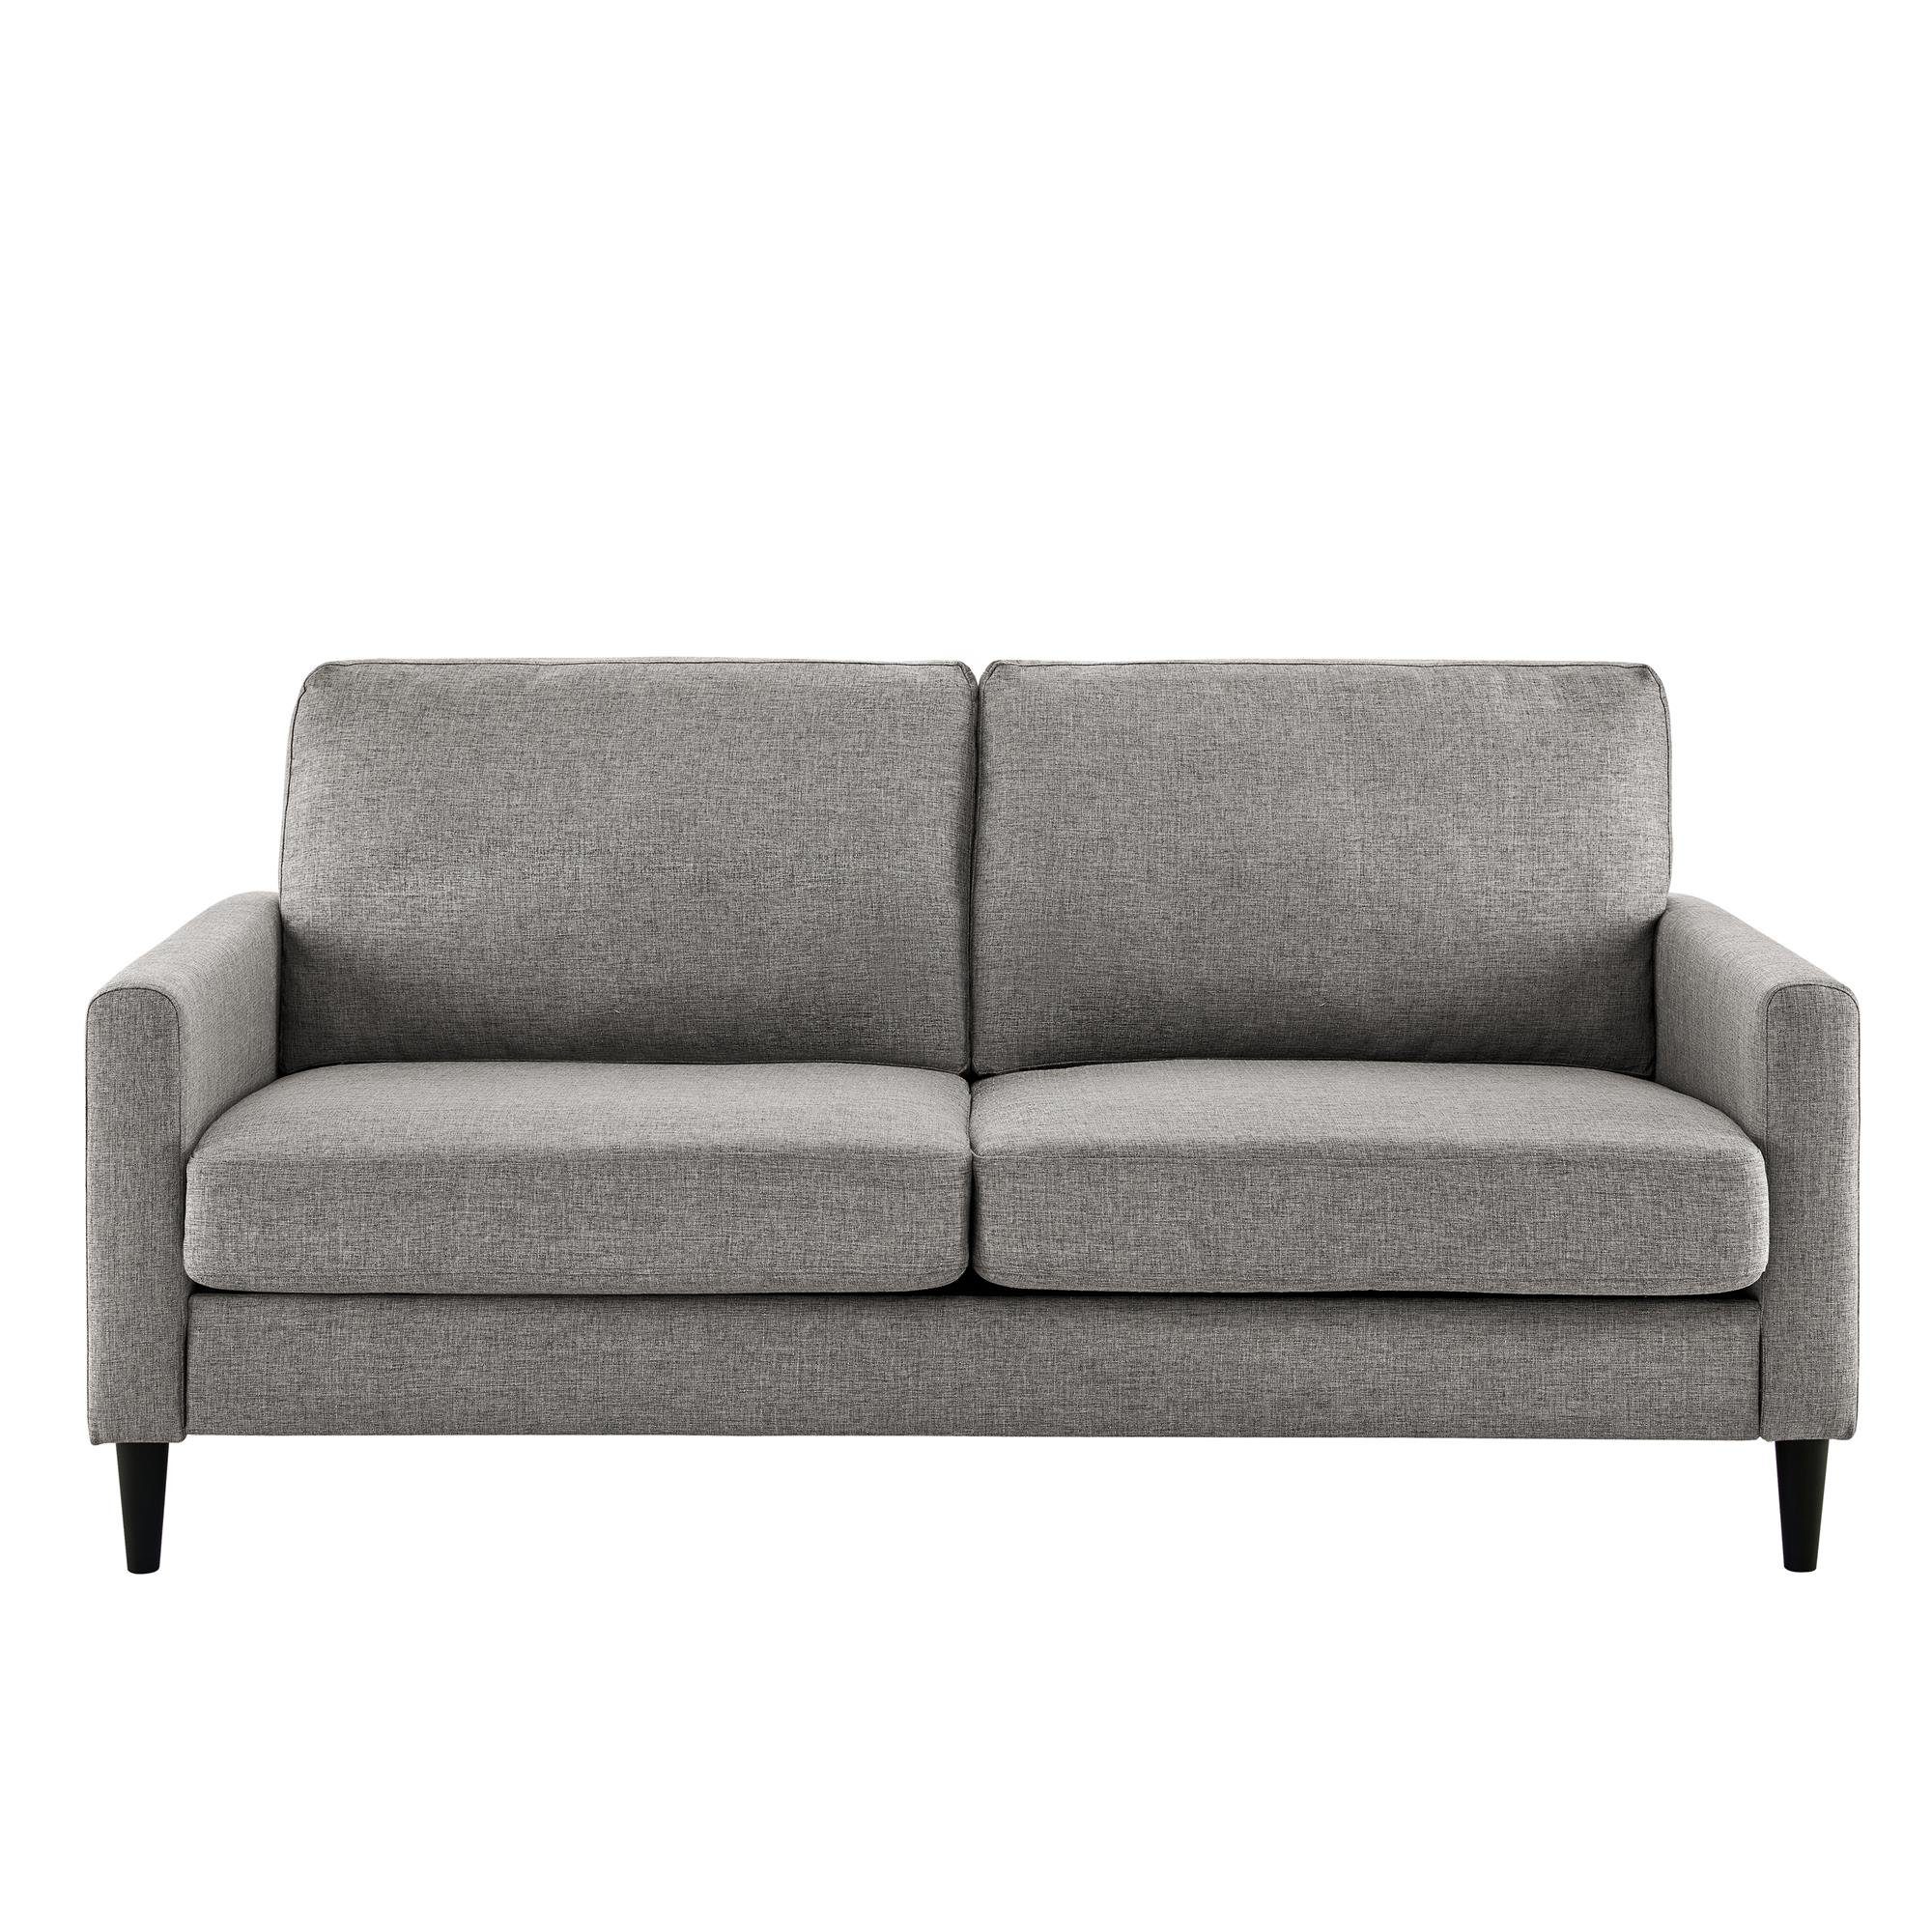 Kaci, Stoffbezug, Breite 3-Sitzer loft24 Couch, cm 188 Sofa